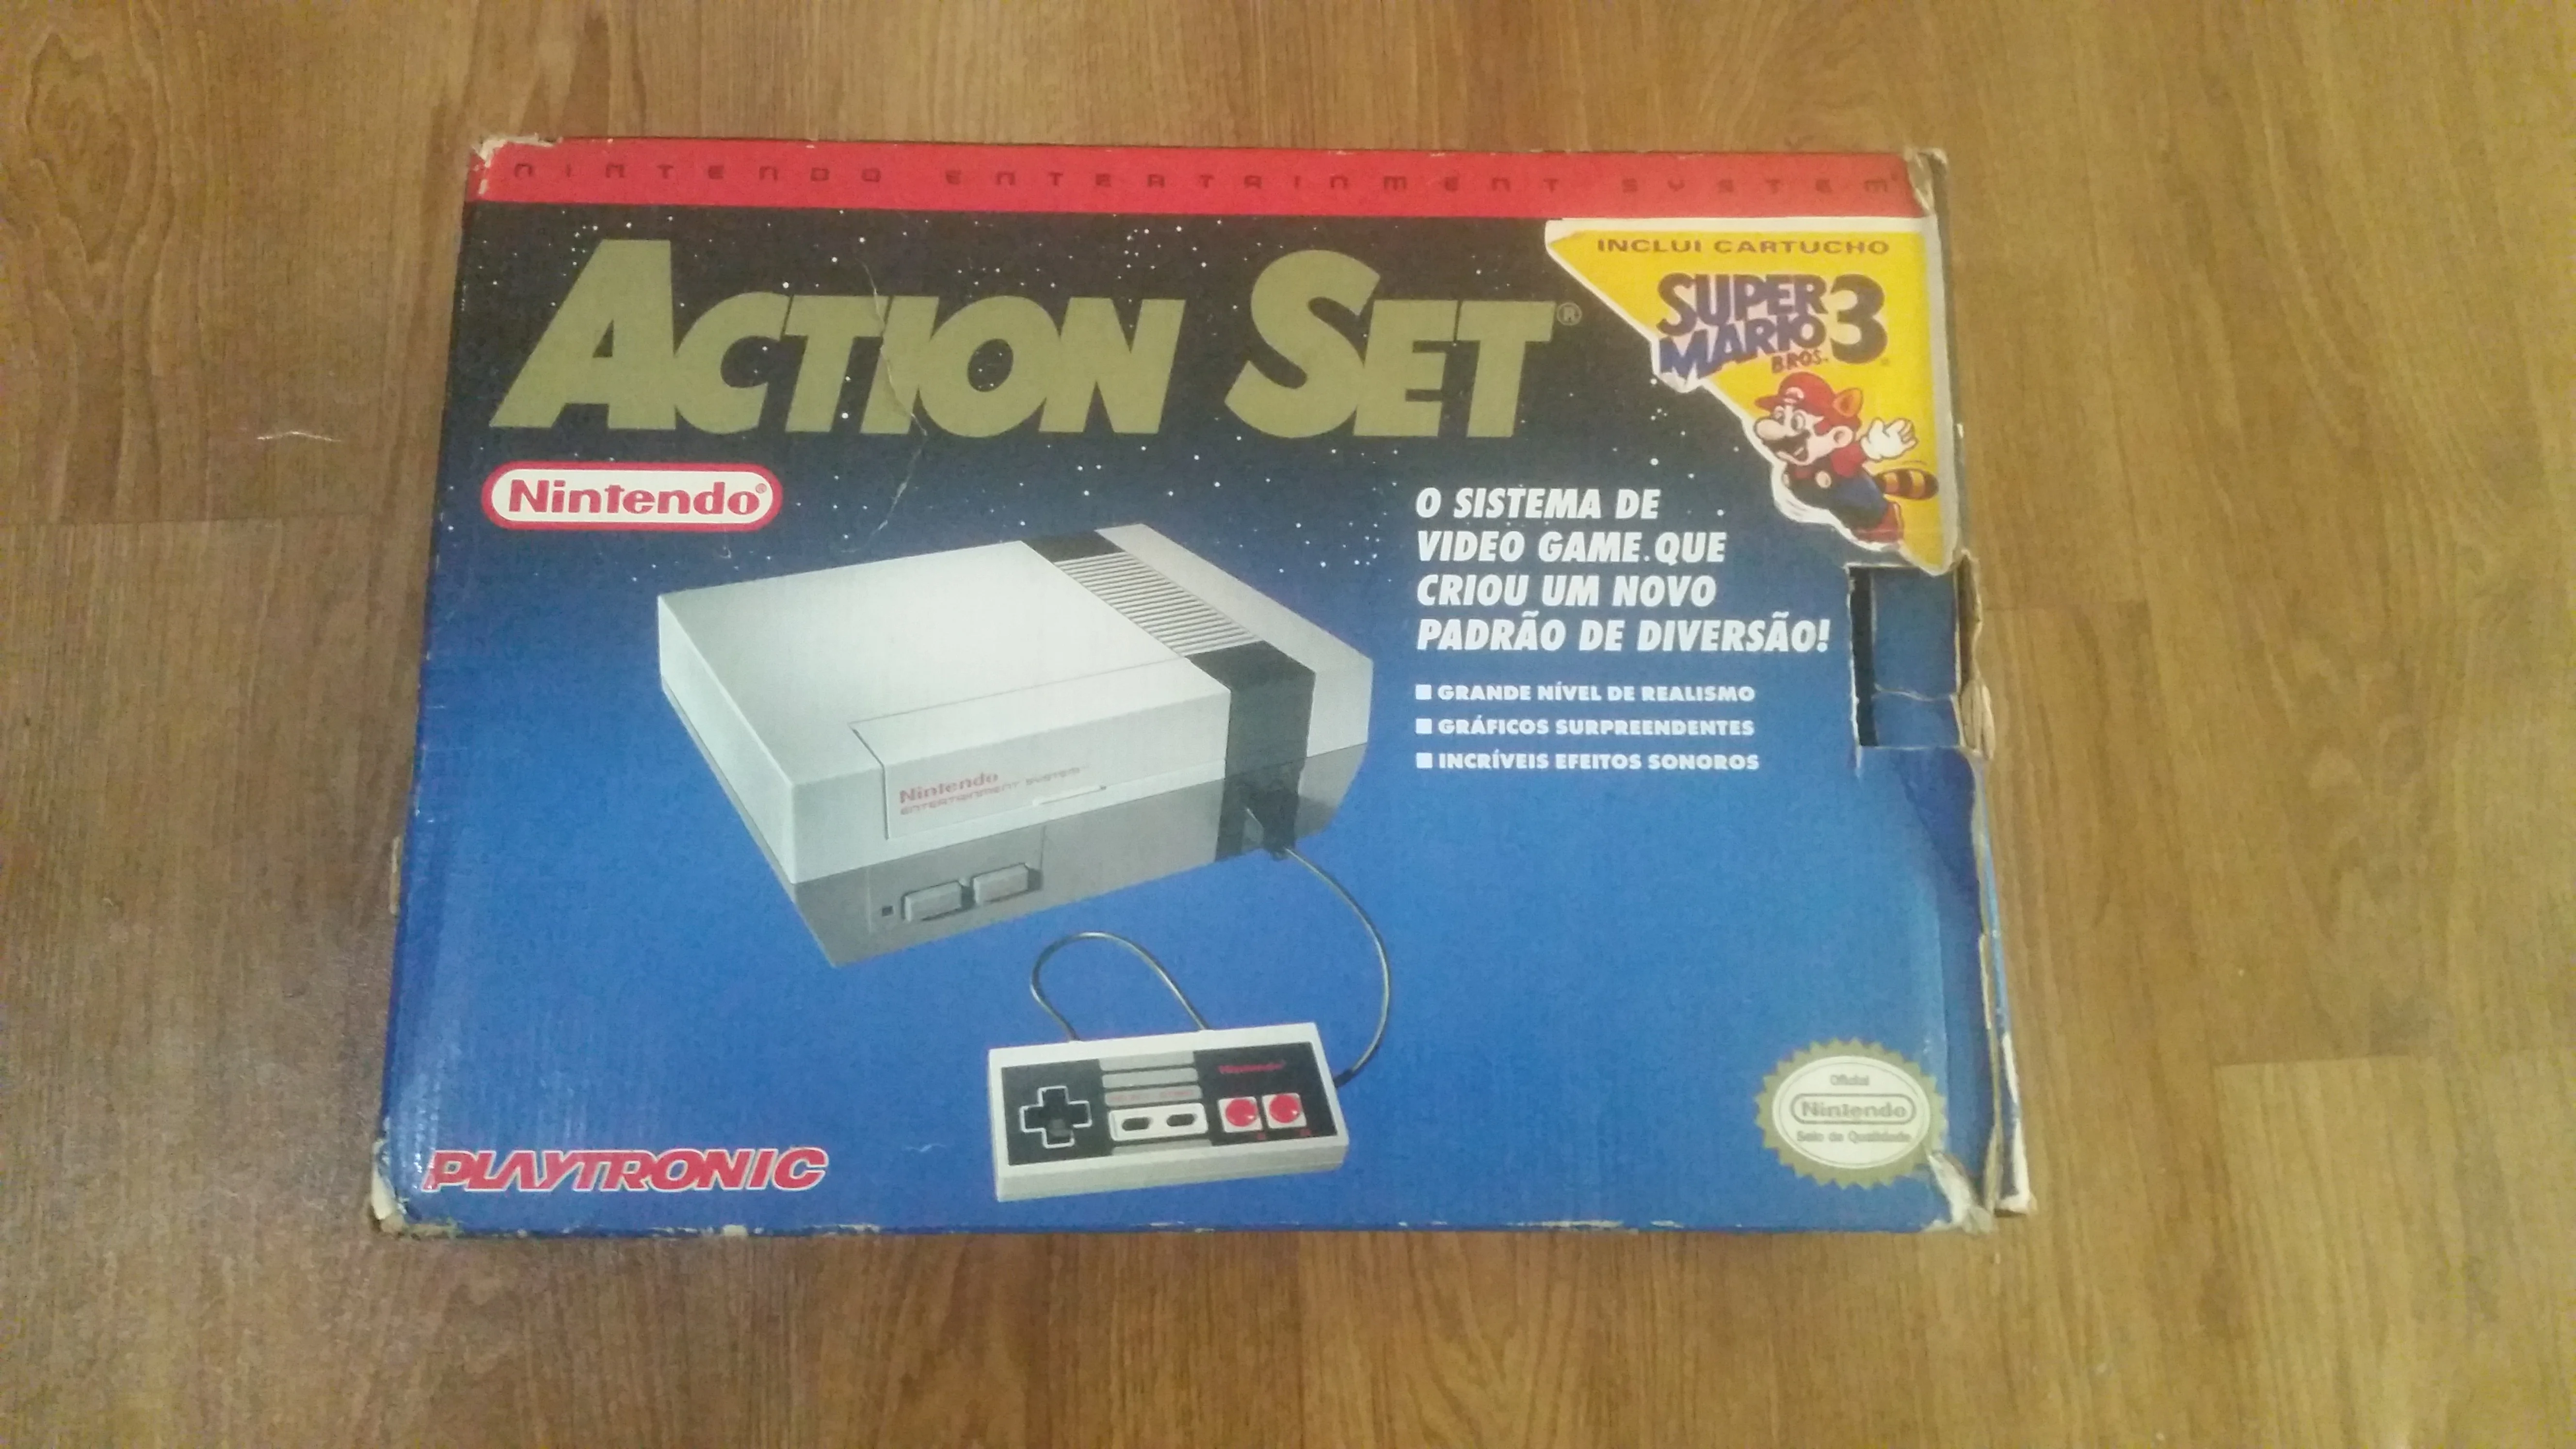  NES Action Set Super Mario Bros 3 Bundle [BR]